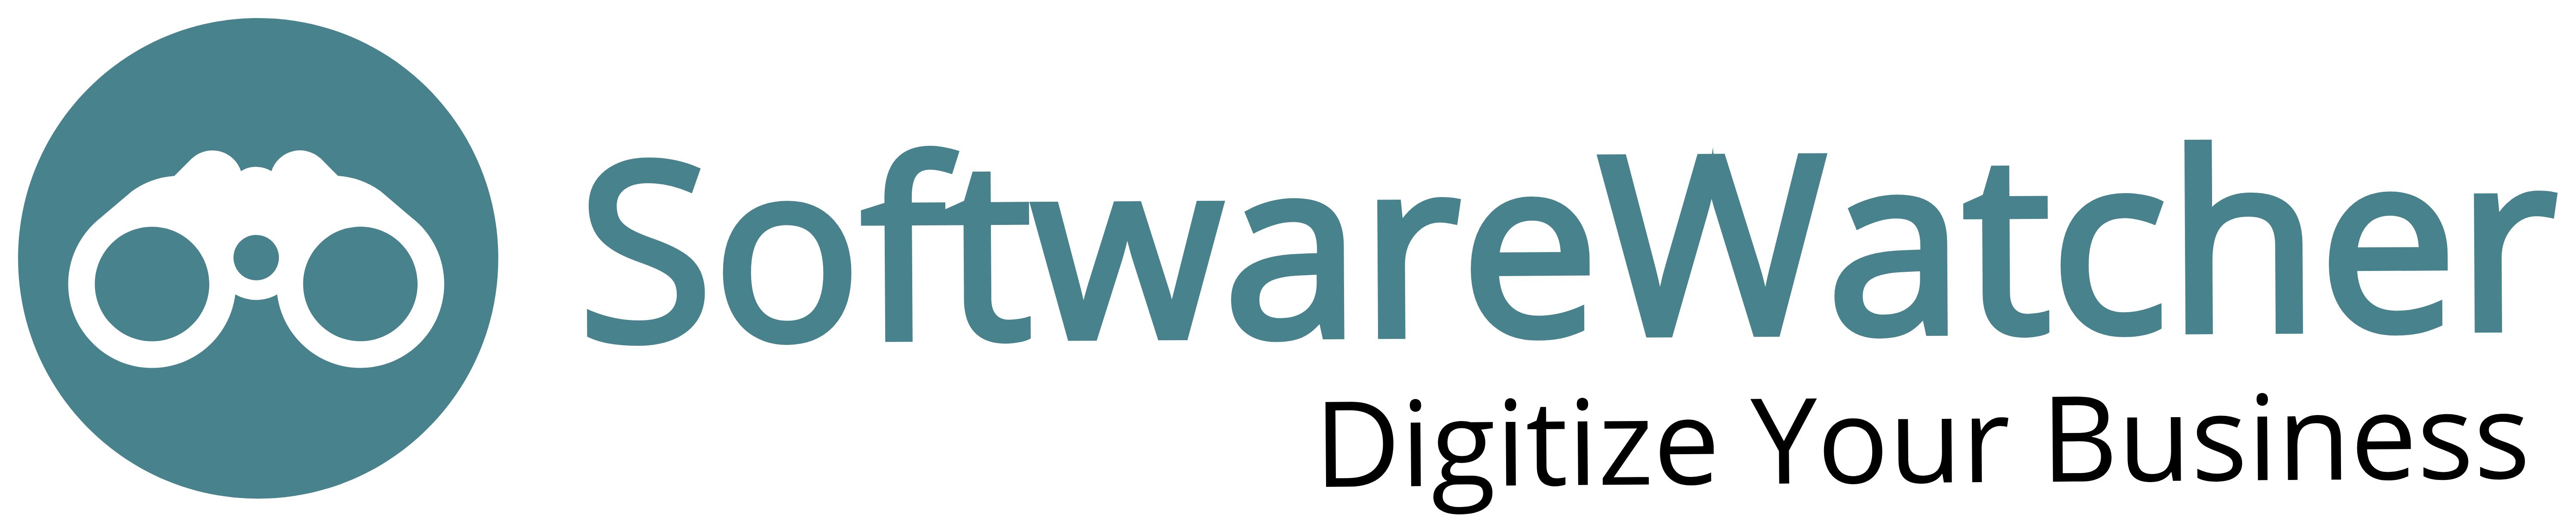 Softwarewatcher logo